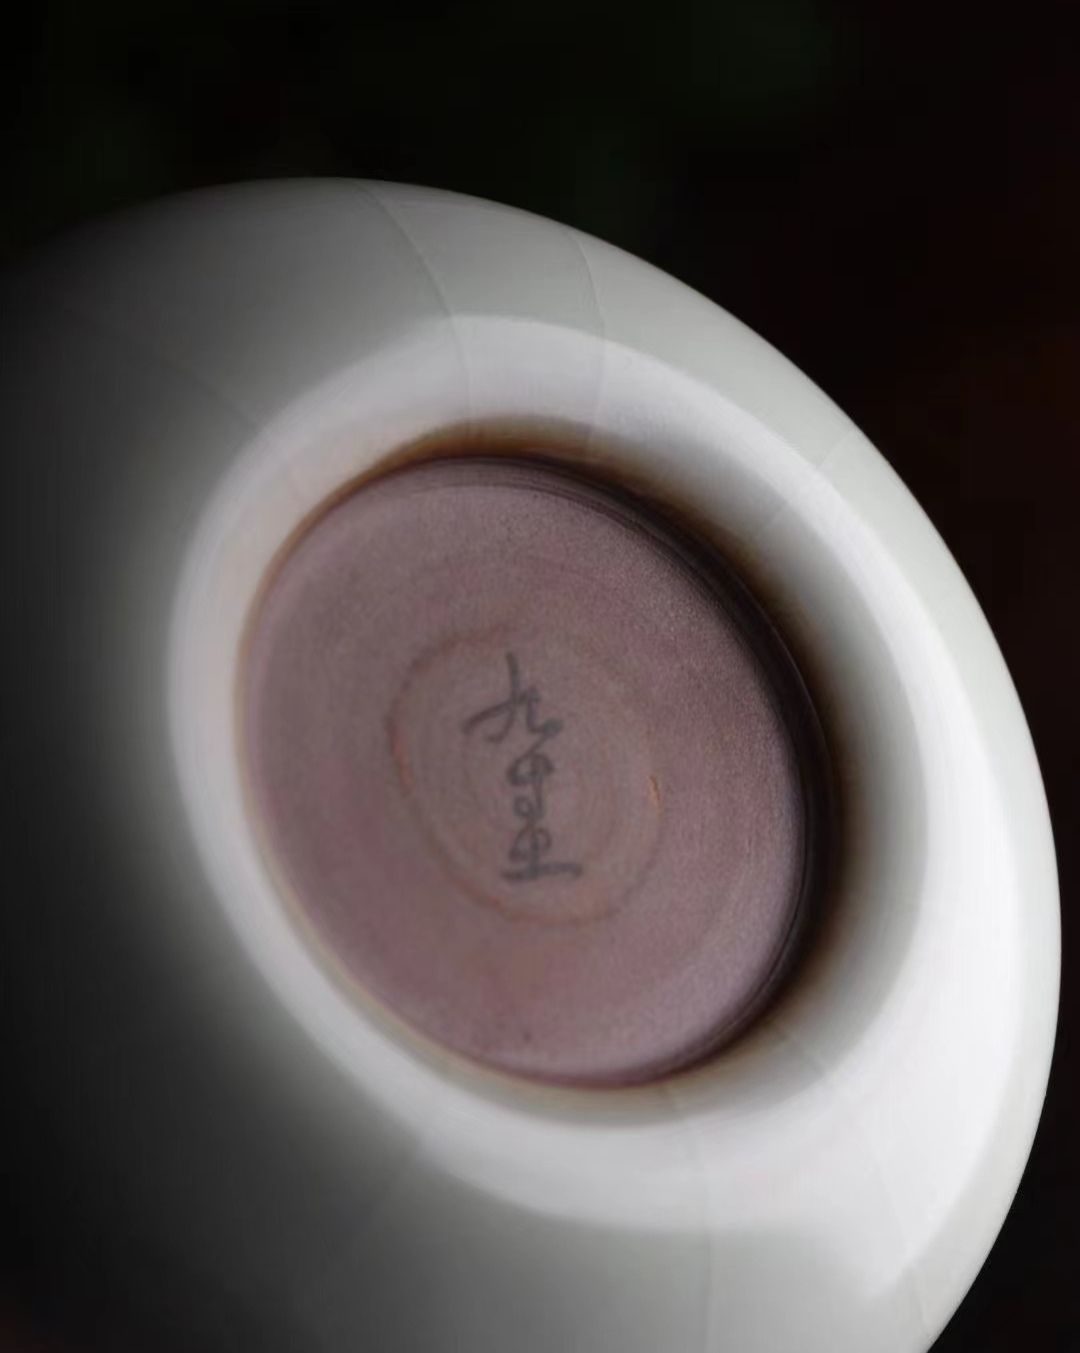 COTV全球直播-江西景德镇九寸土陶瓷有限公司专业经营销售：汝瓷茶具各种风格、各种不同的汝瓷色釉，汝瓷青花釉里红、汝瓷粉彩等产品。欢迎大家光临！